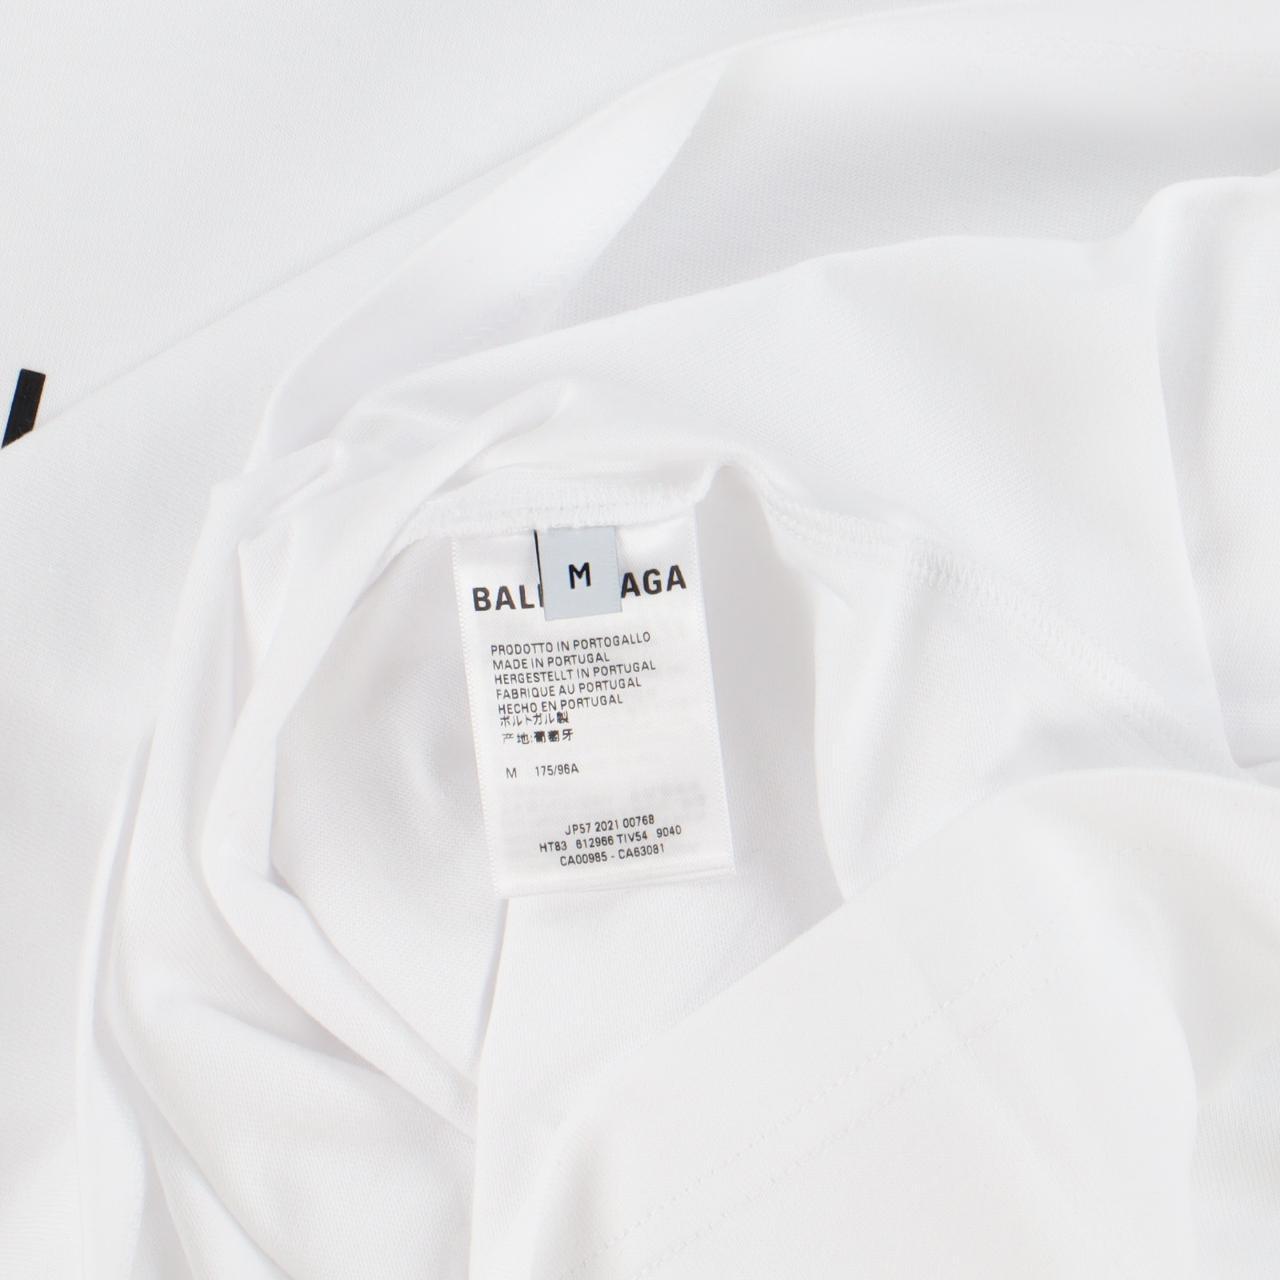 Product Image 4 - Balenciaga White Copyright Logo T-Shirt

-Size